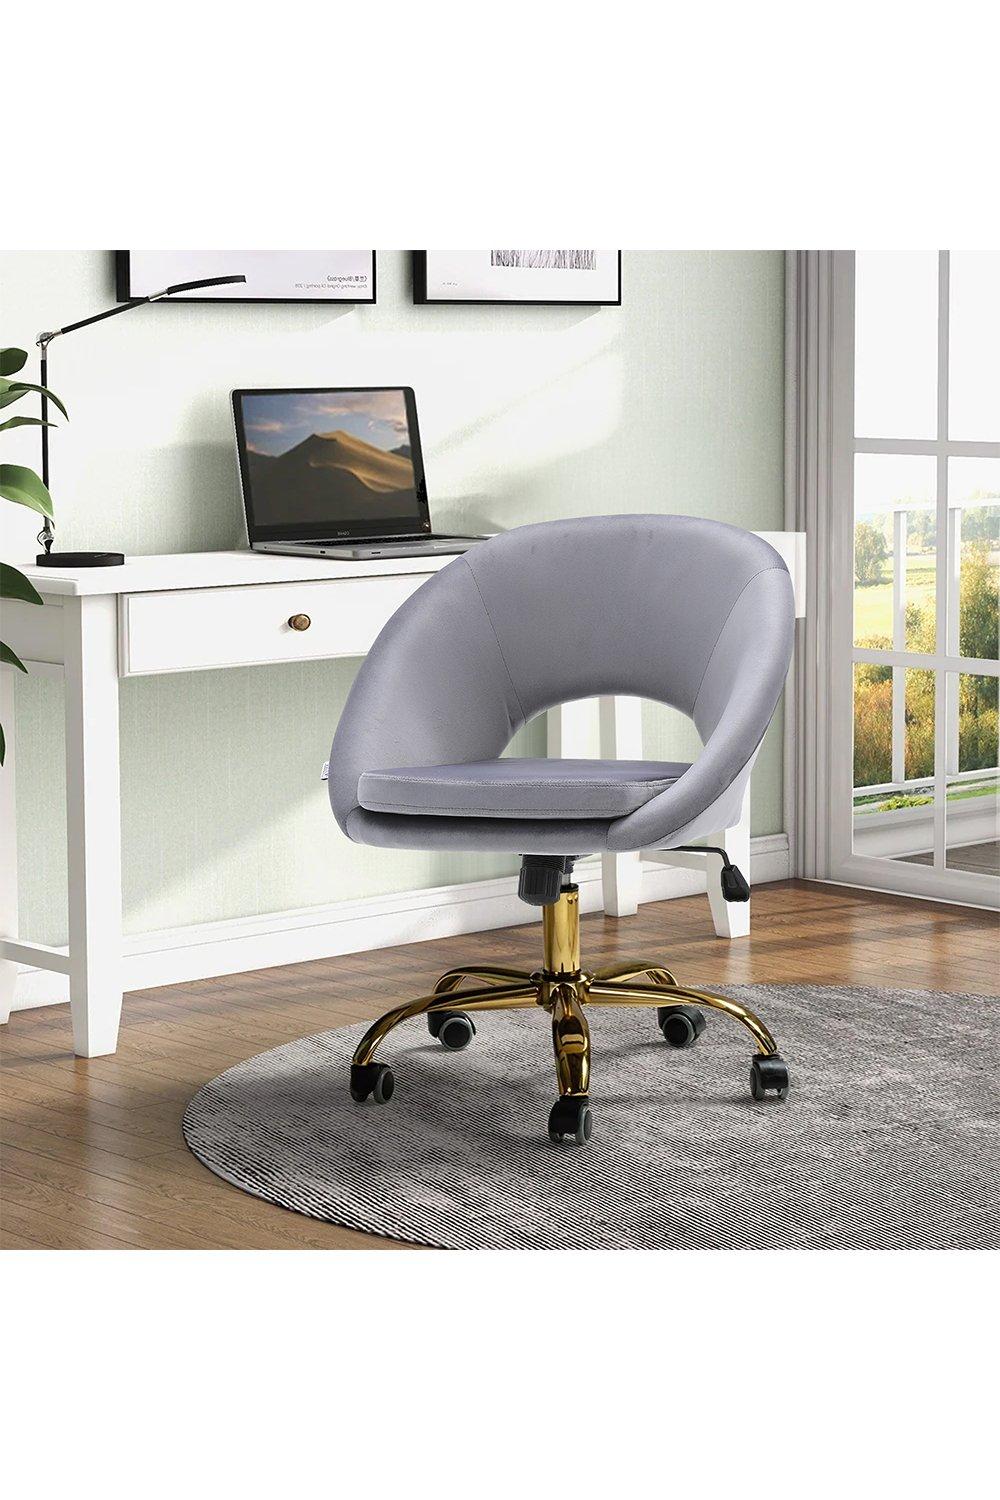 Grey Velvet Swivel Office Chair Height Adjustable for Home Office